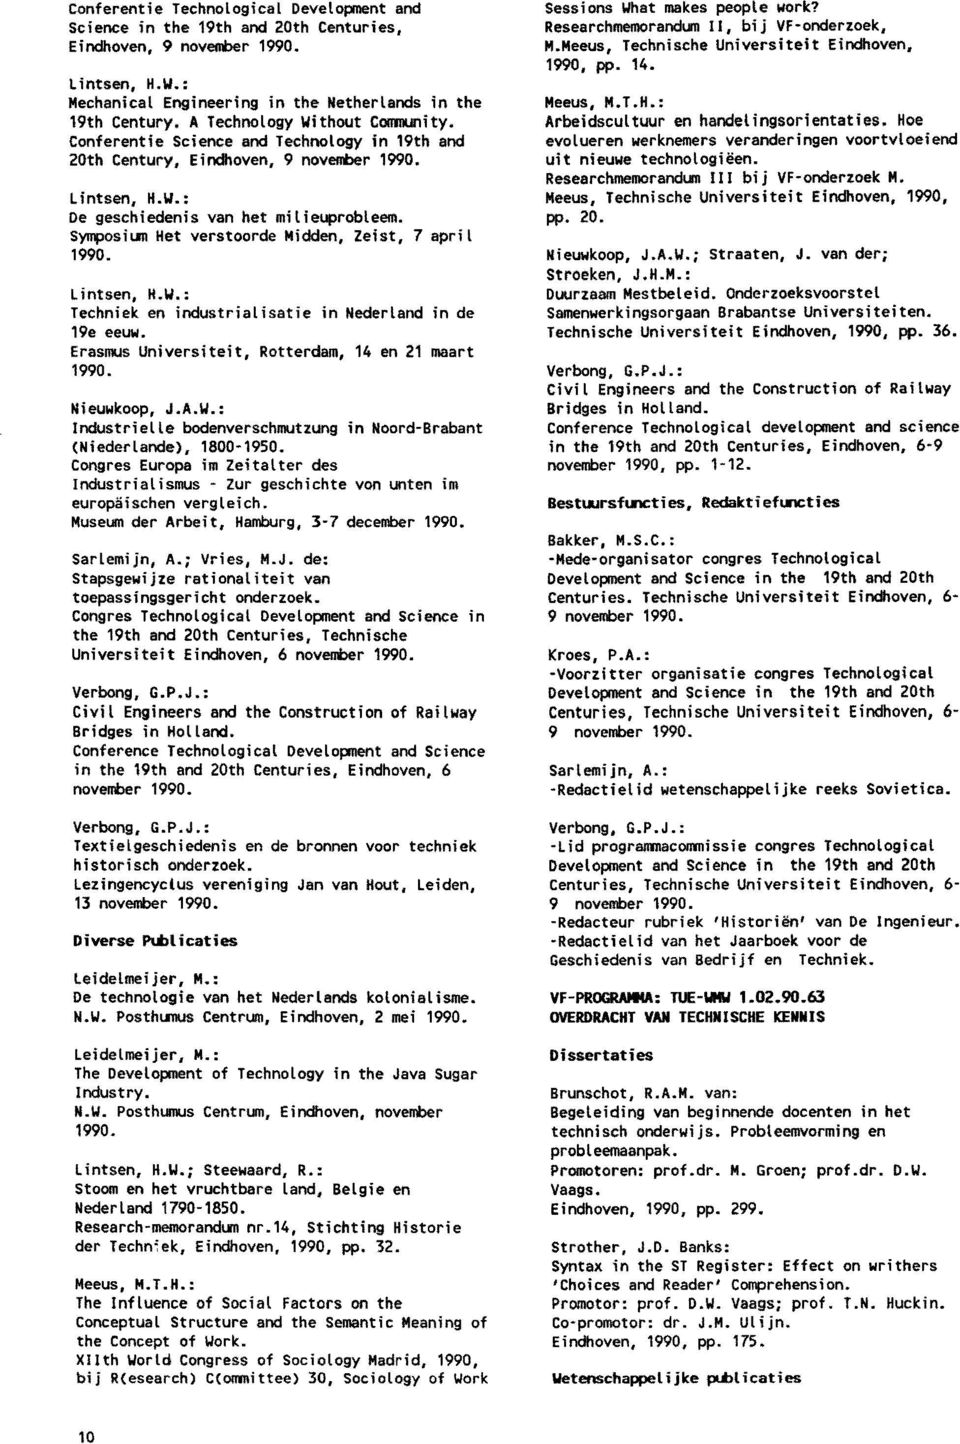 Symposium Het verstoorde Midden, Zeist, 7 april 1990. L intsen, H.W.; Techniek en industrialisatie in Nederland in de 1ge eeuw. Erasmus Universiteit, Rotterdam, 14 en 21 maart 1990. Nieuwkoop, J.A.W.: Industrielle bodenverschmutzung in Noord-Brabant (Niederlande), 1800-1950.